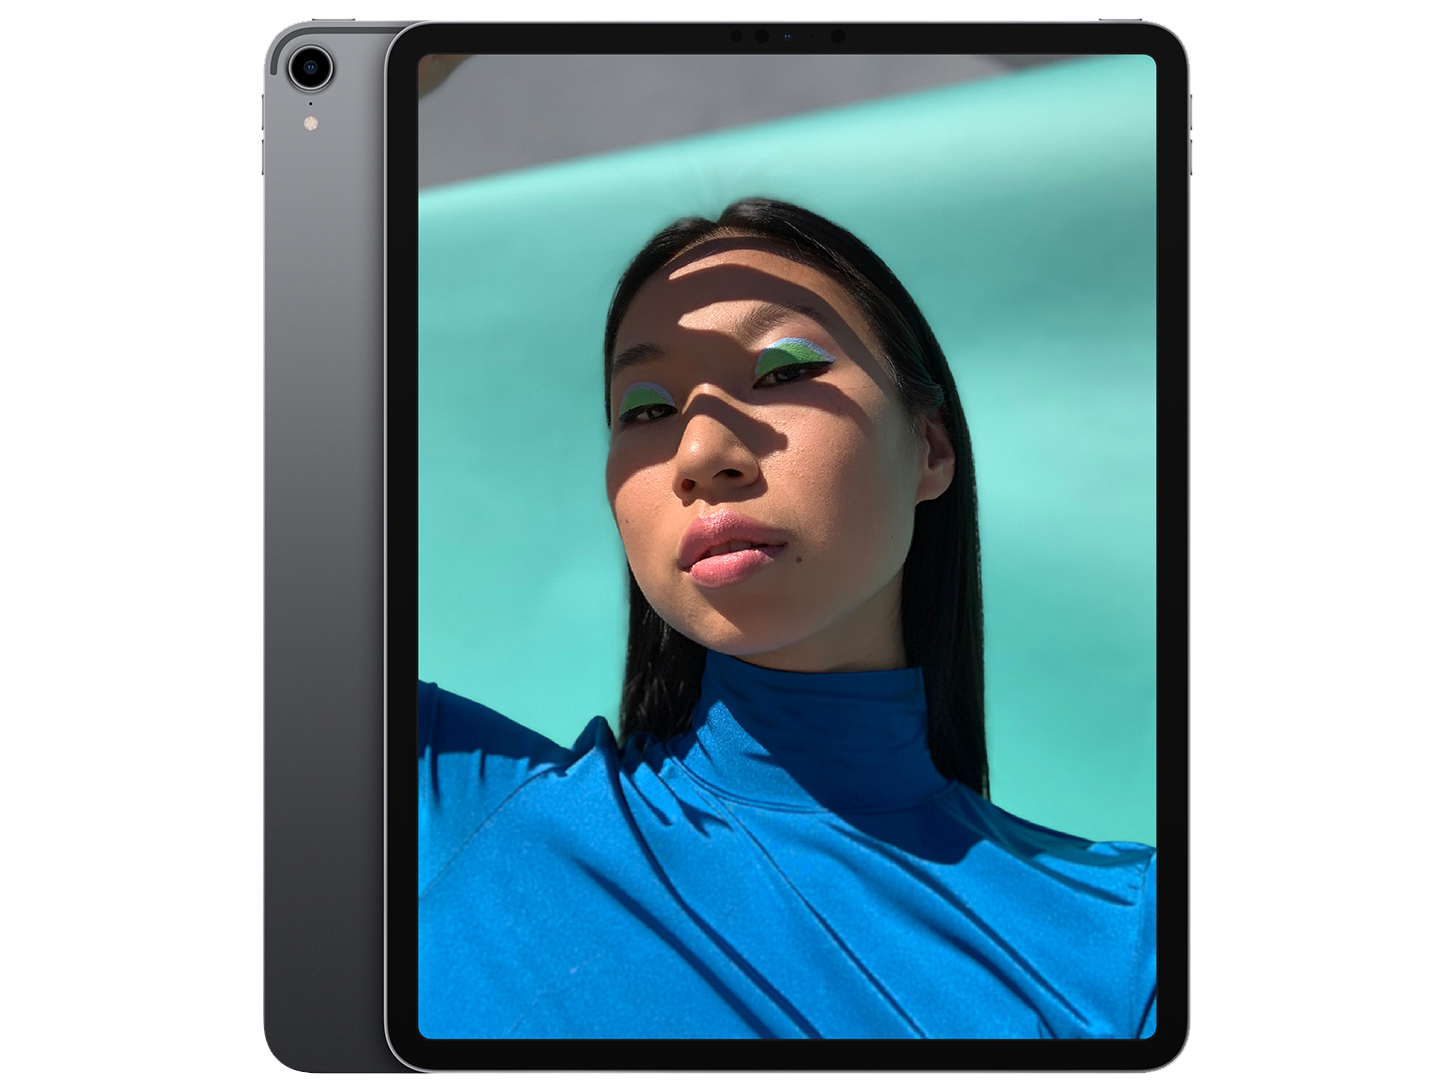 Apple iPad Pro 12.9 2018 - Notebookcheck.net External Reviews